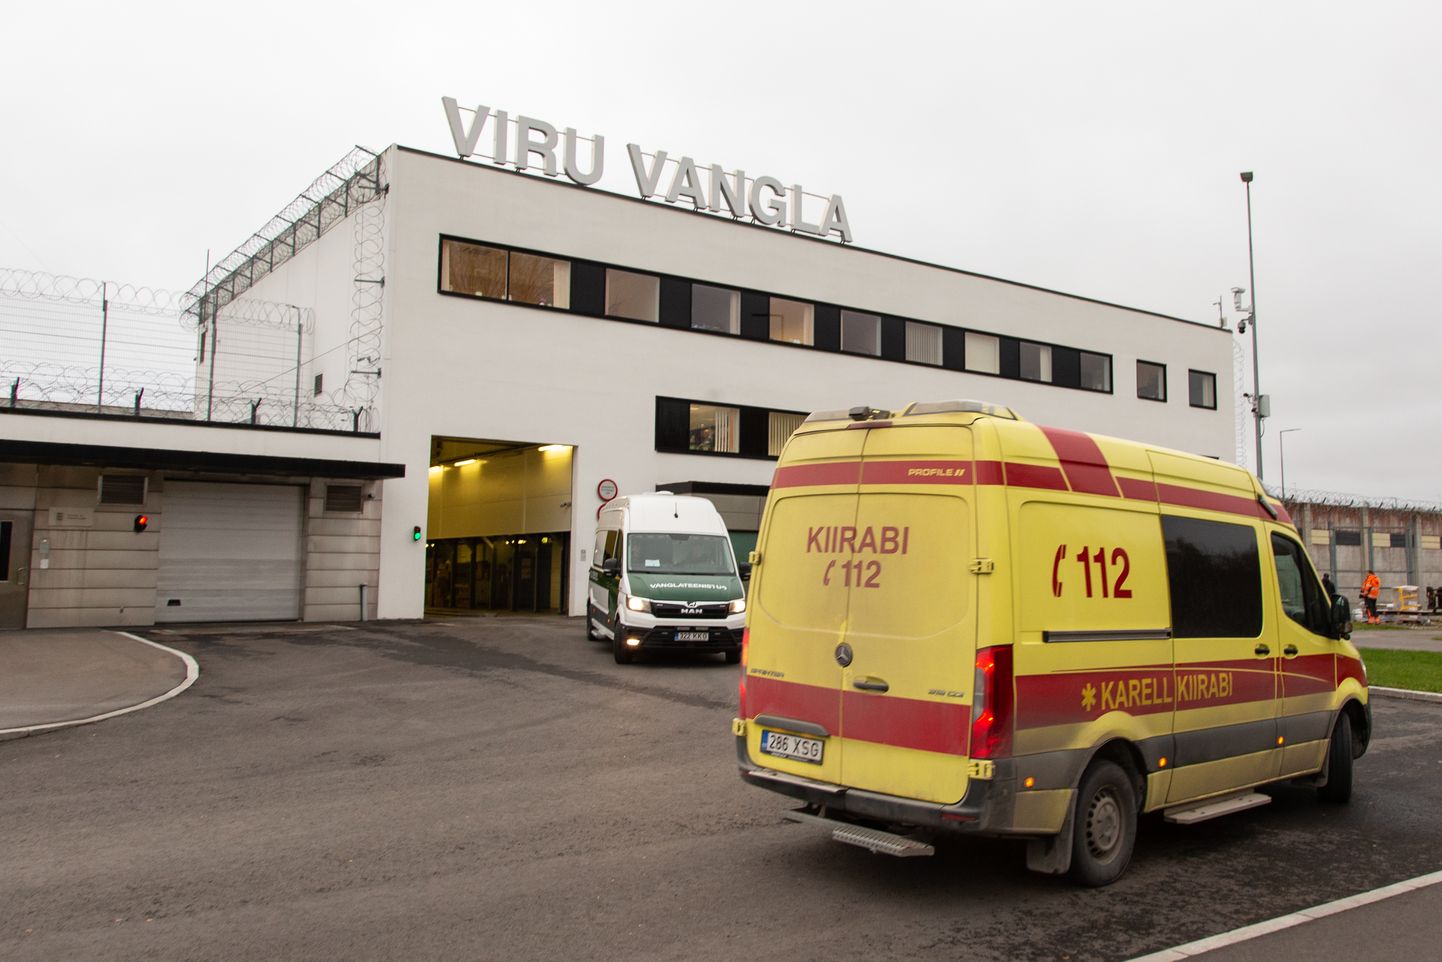 3 ноября прошлого года Николая Осипенко доставили в Вирускую тюрьму на машине скорой помощи. Через полгода Тартуский окружной суд освободил его из-под стражи, хотя прокуратура ходатайствовала о продлении срока задержания.